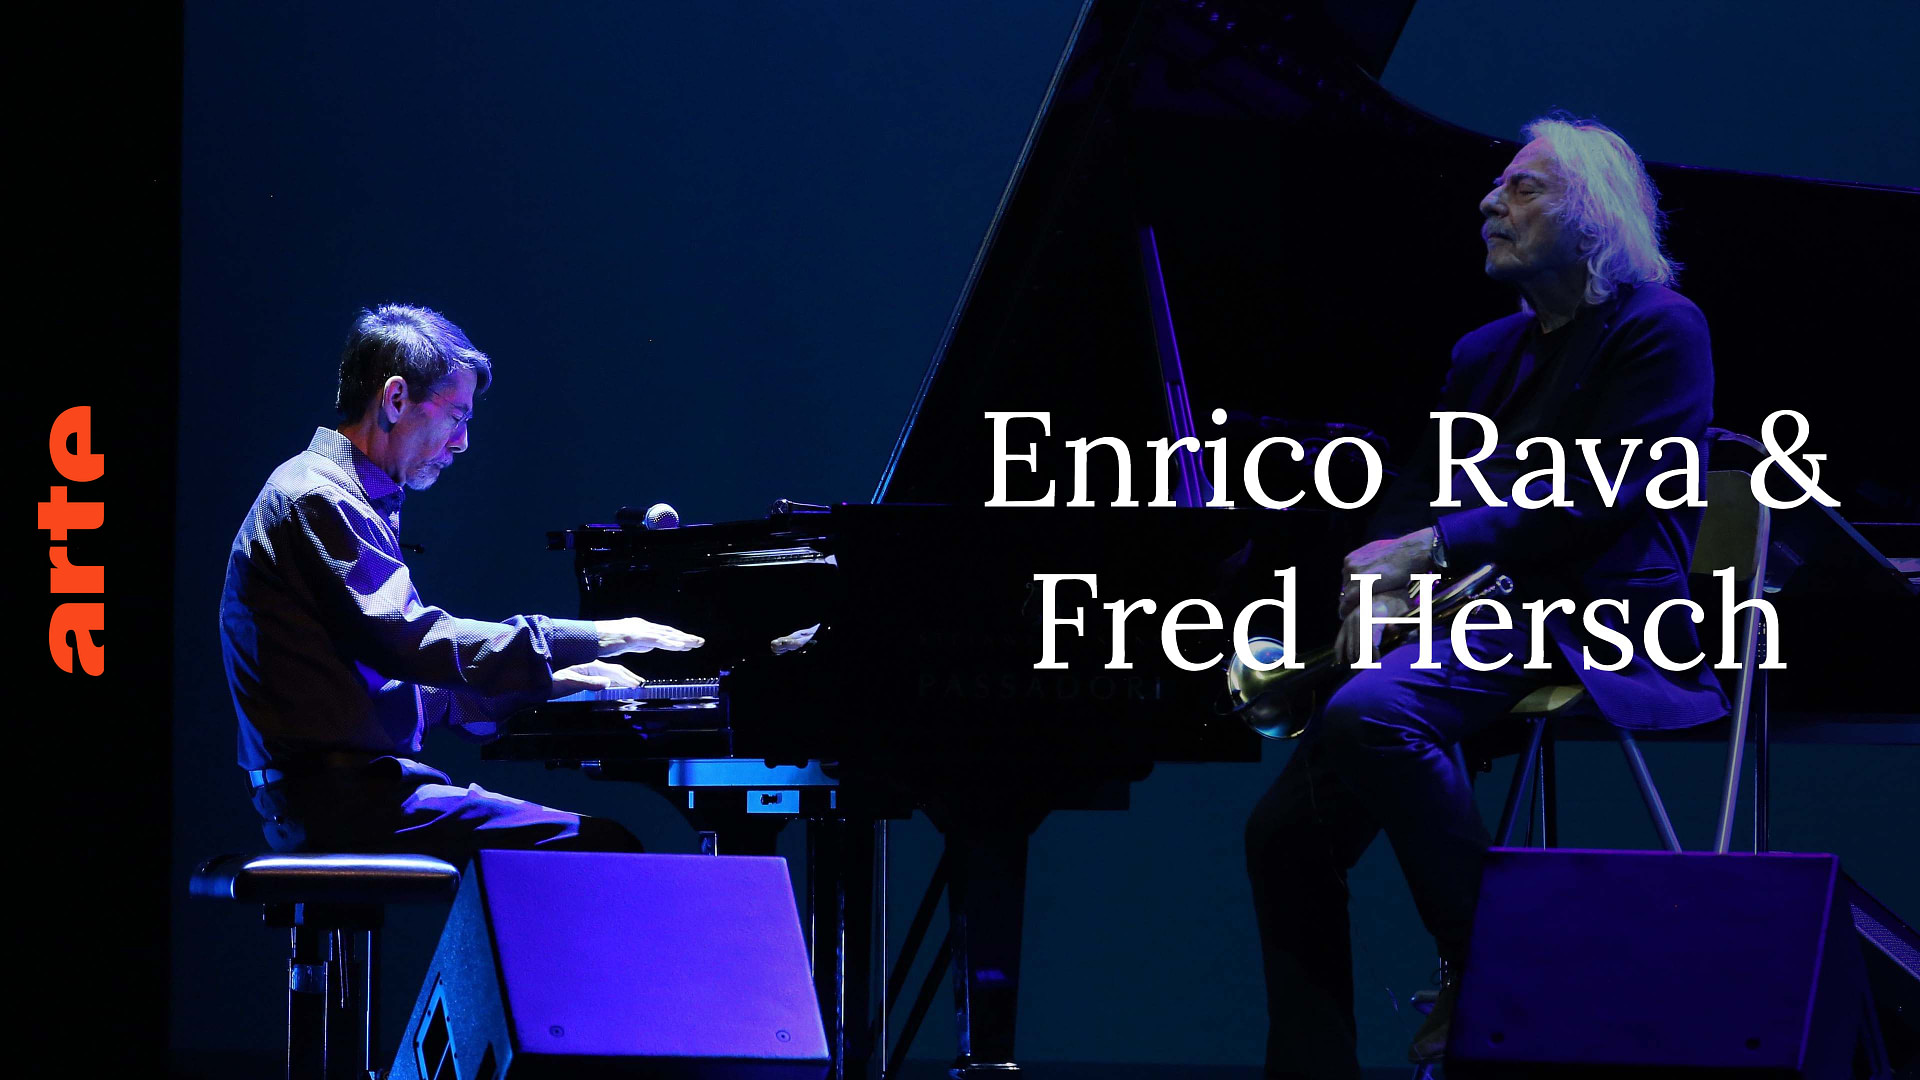 Enrico Rava & Fred Hersch